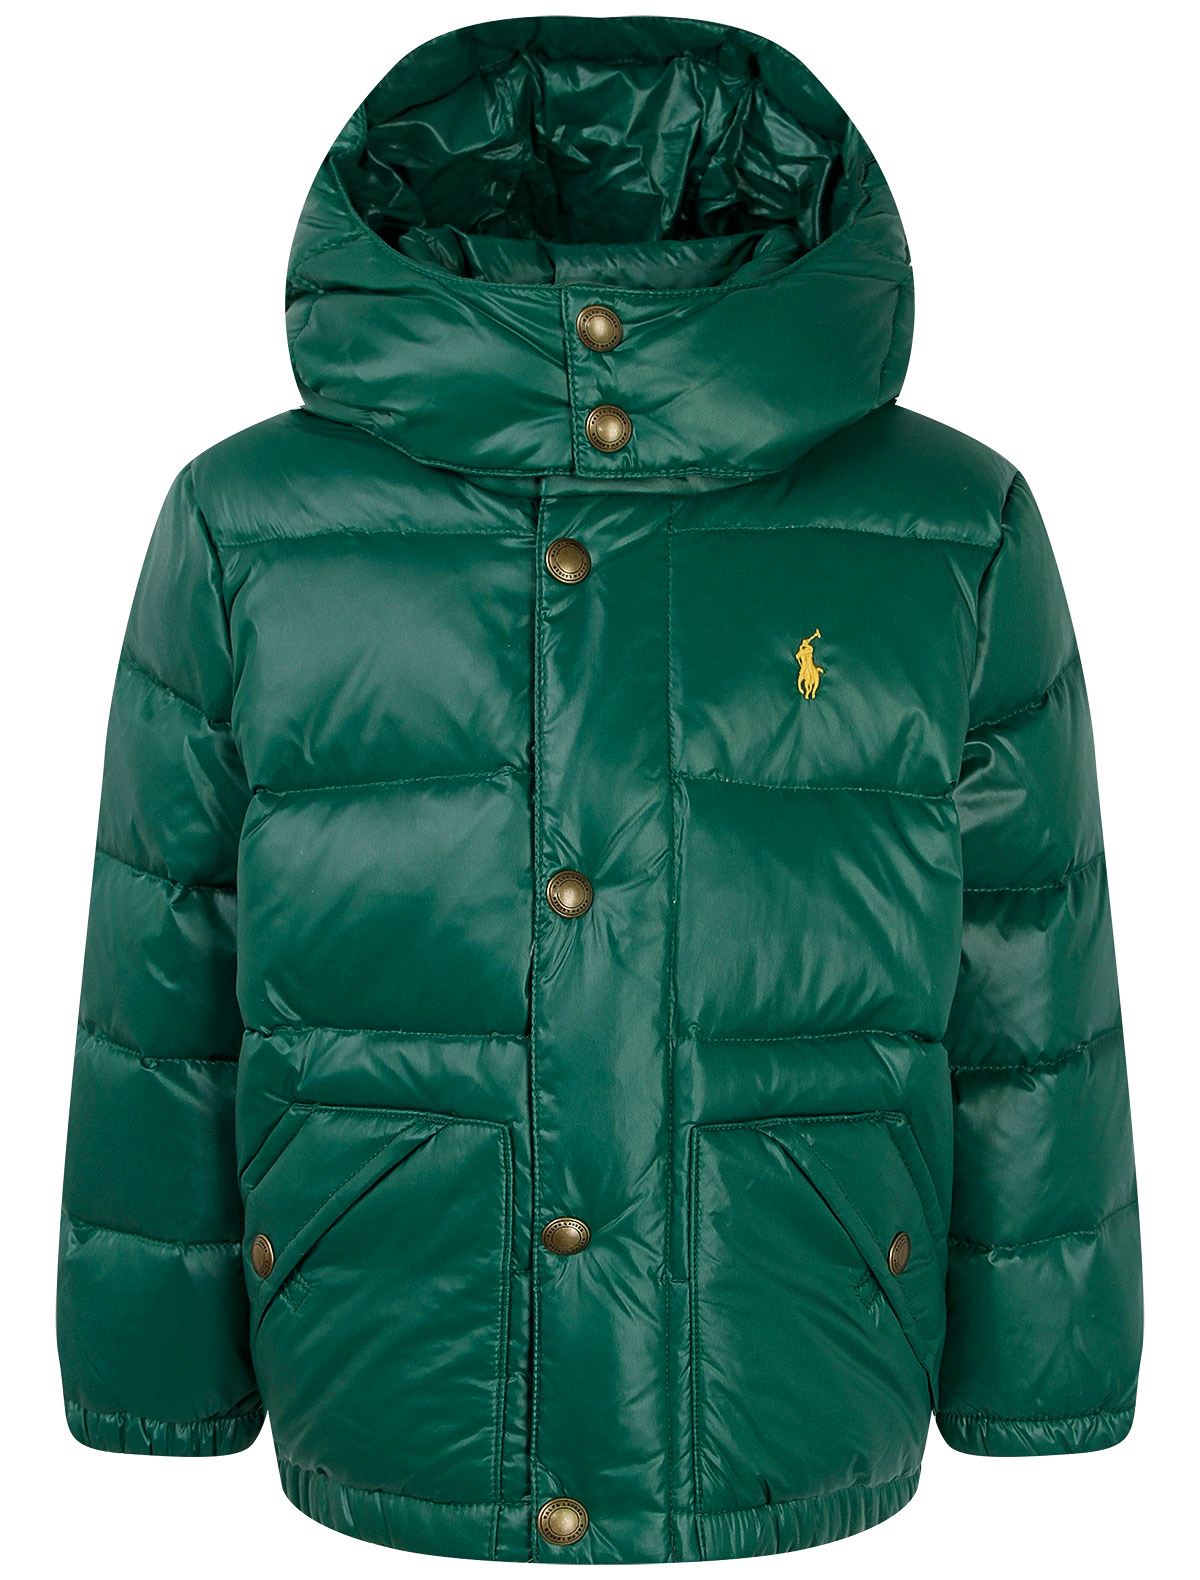 Куртка Ralph Lauren 2263595, цвет зеленый, размер 4 1074519083709 - фото 1